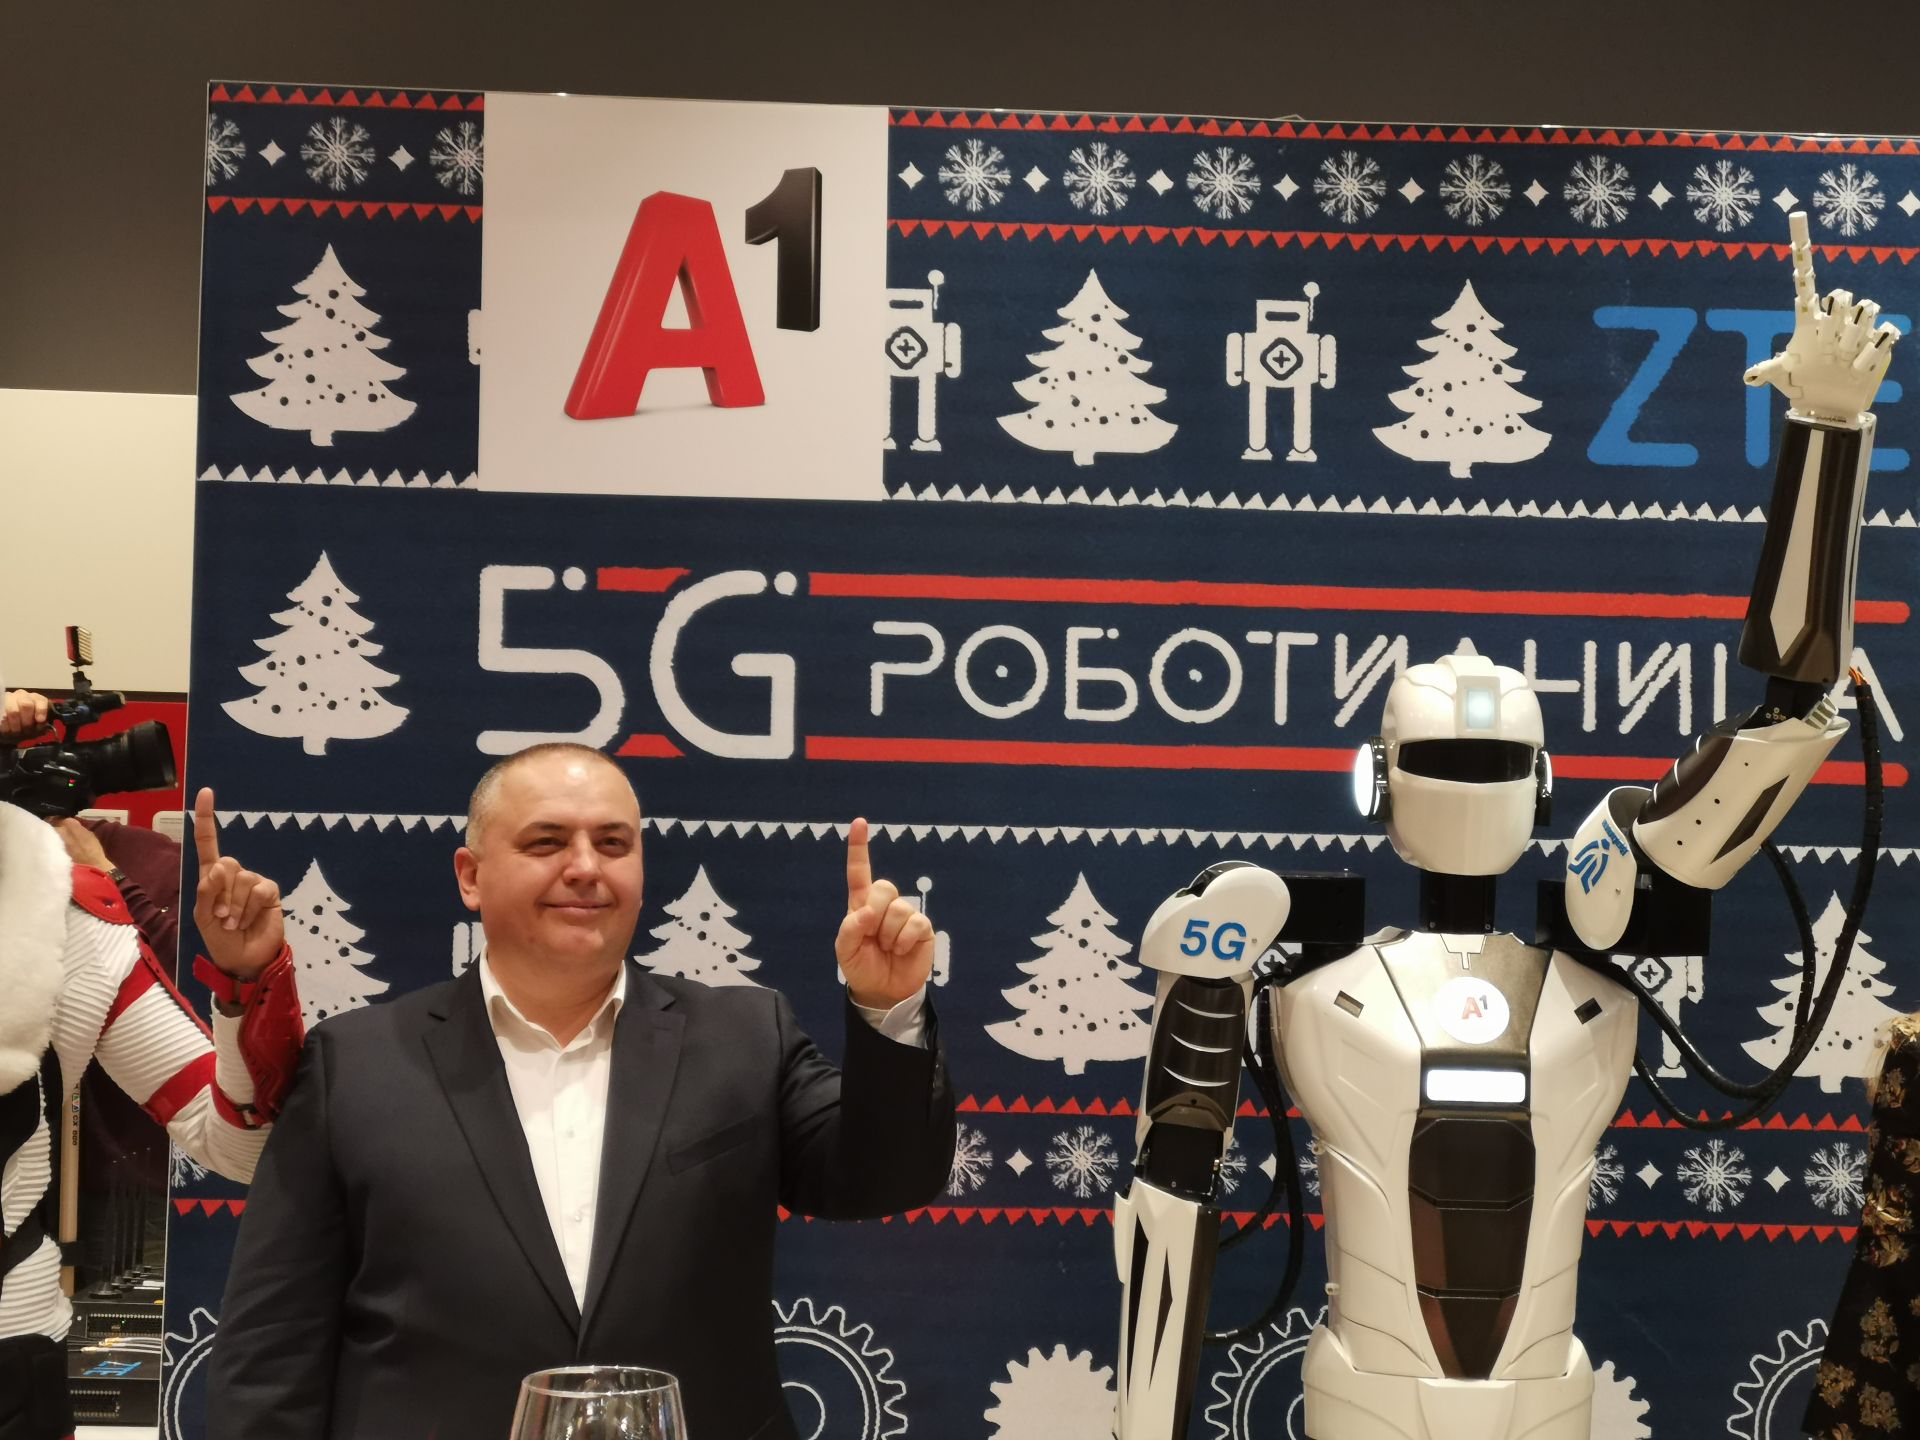 Красимир Петров, директор "Конвергентна мрежа и услуги" в А1 България и роботът използван при 5G демонстрацията